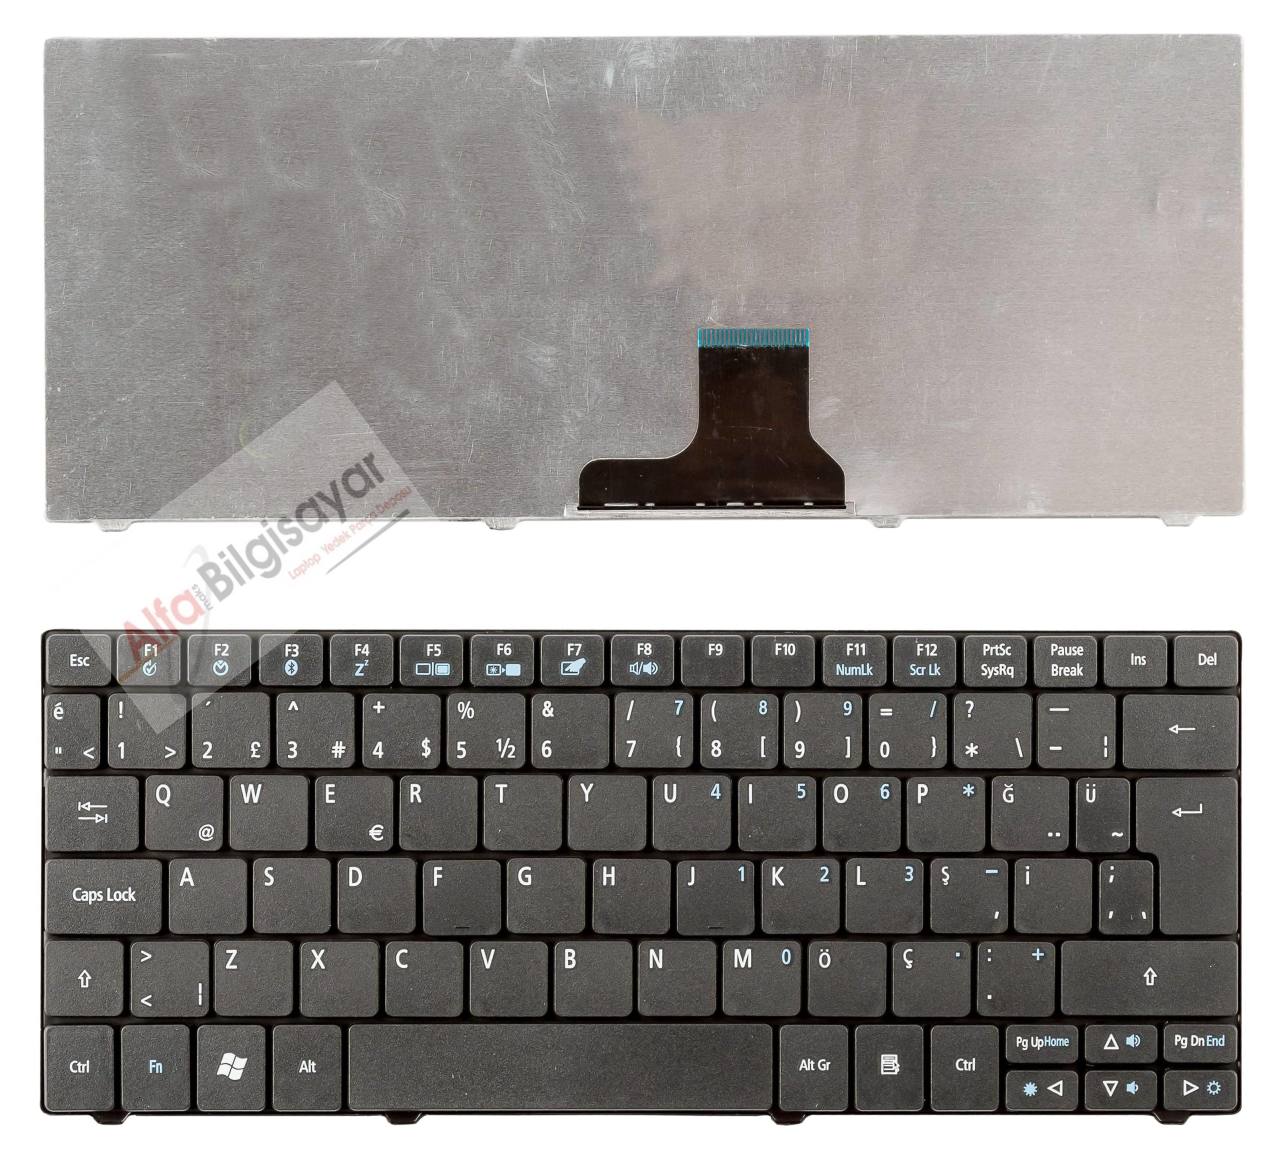 Acer Aspire siyah renk 1430, One ZA3, ZA5, ZA8, 751H, 753H, Timeline 1410, 1810, 1810T ONE 722 Notebook Klavye